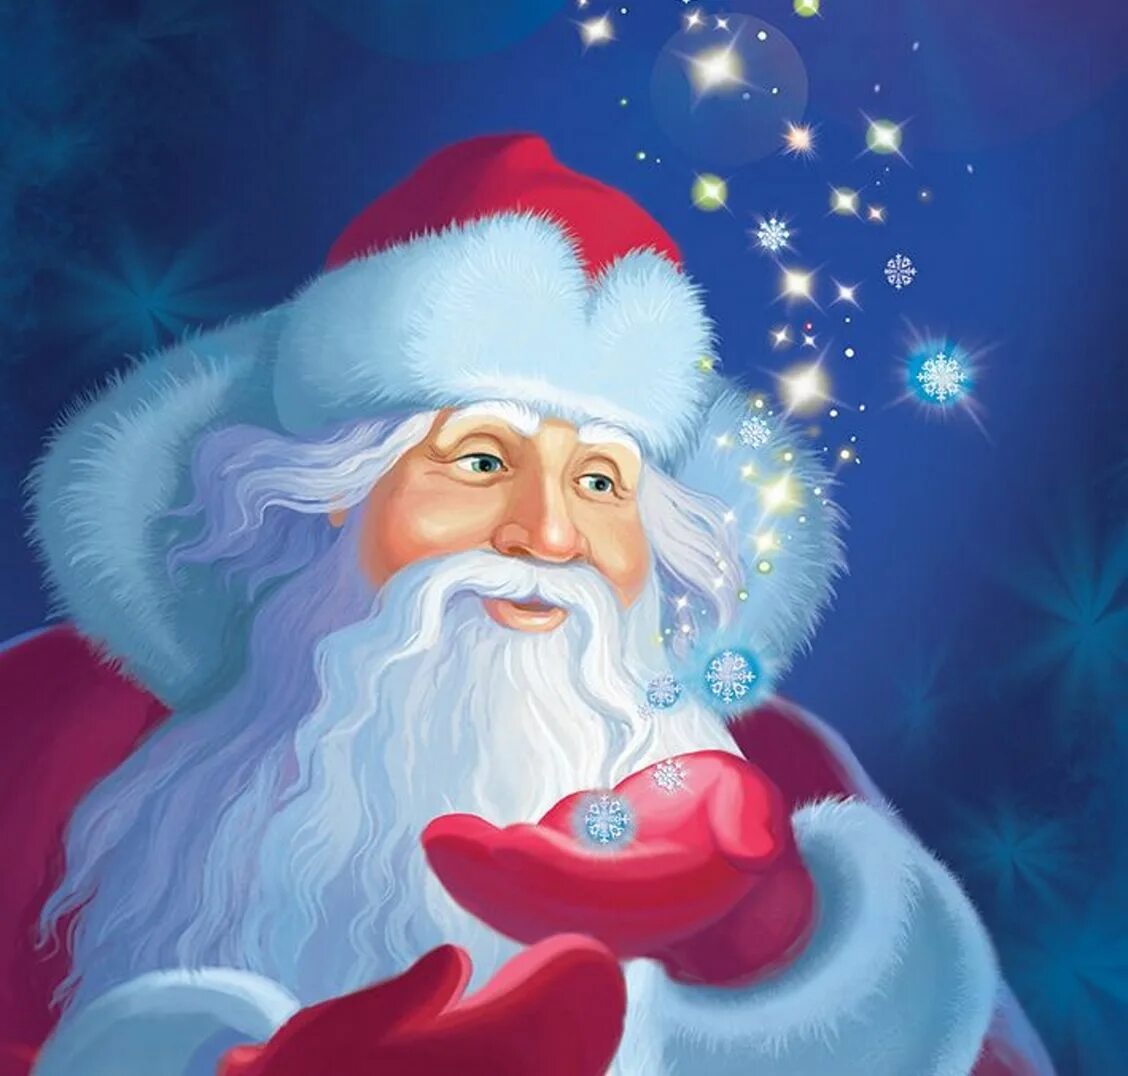 Доброго деда мороза. Дед Мороз. Изображение Деда Мороза. Портрет Деда Мороза. Красивый русский дед Мороз.